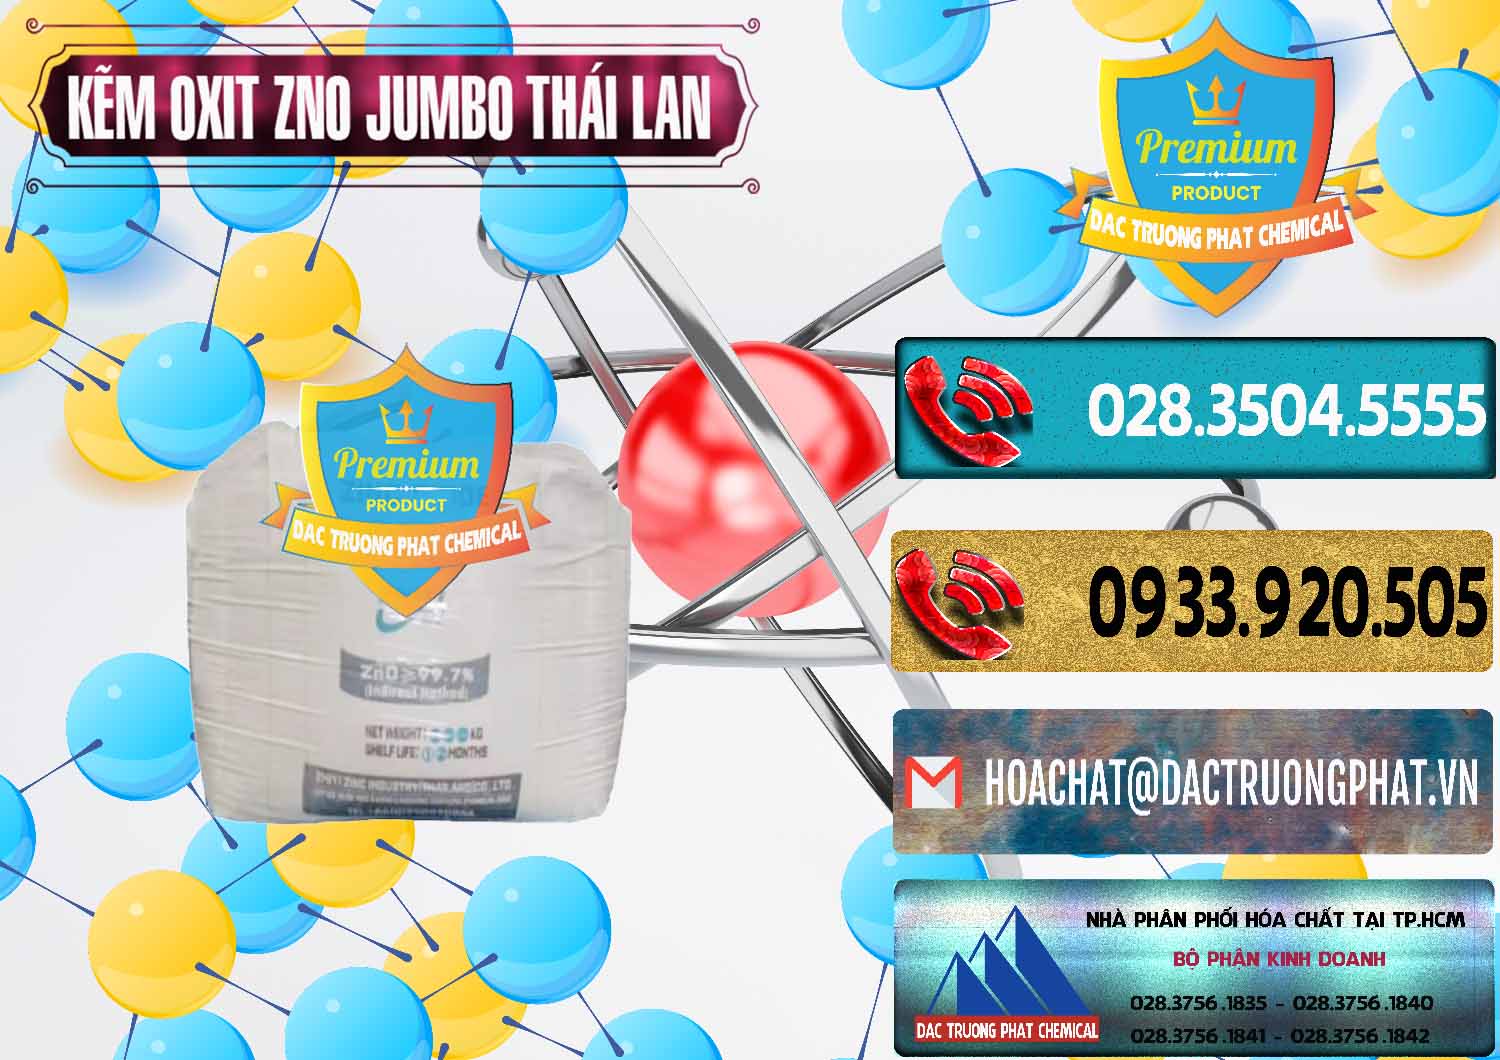 Đơn vị phân phối ( bán ) Zinc Oxide - Bột Kẽm Oxit ZNO Jumbo Bành Thái Lan Thailand - 0370 - Công ty cung cấp & phân phối hóa chất tại TP.HCM - hoachatdetnhuom.com